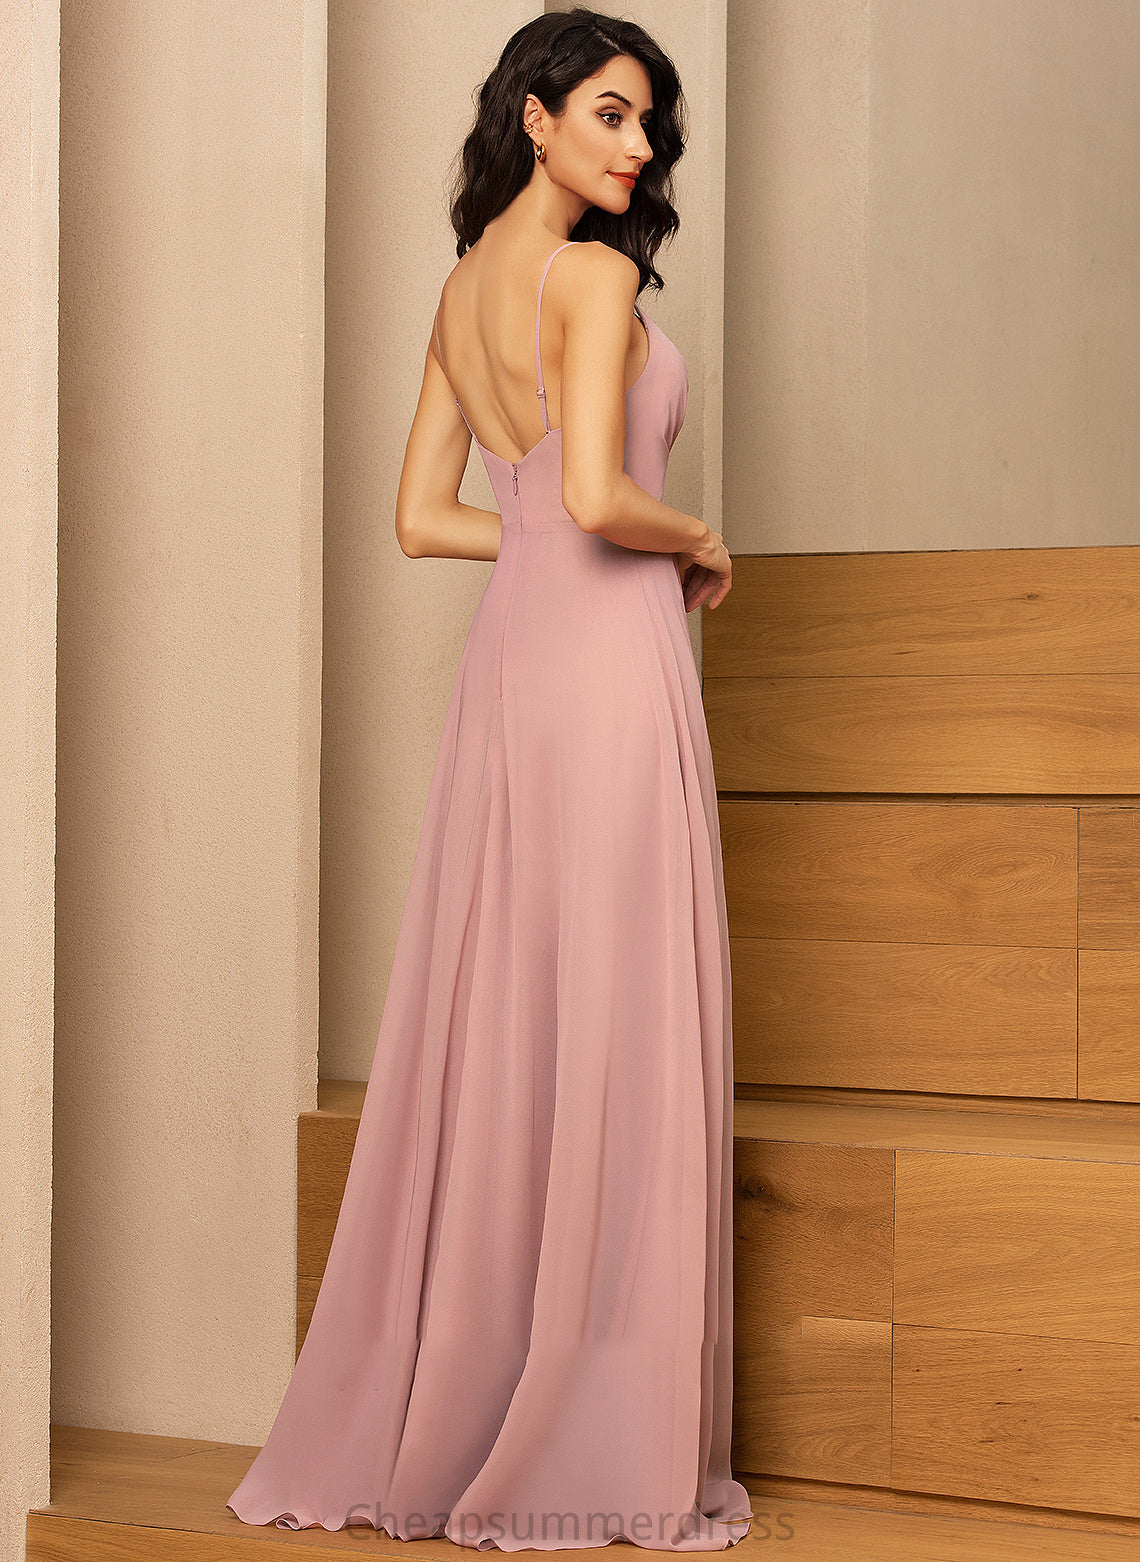 Embellishment Neckline Silhouette Ruffle Fabric Length V-neck A-Line Floor-Length SplitFront Marianna A-Line/Princess